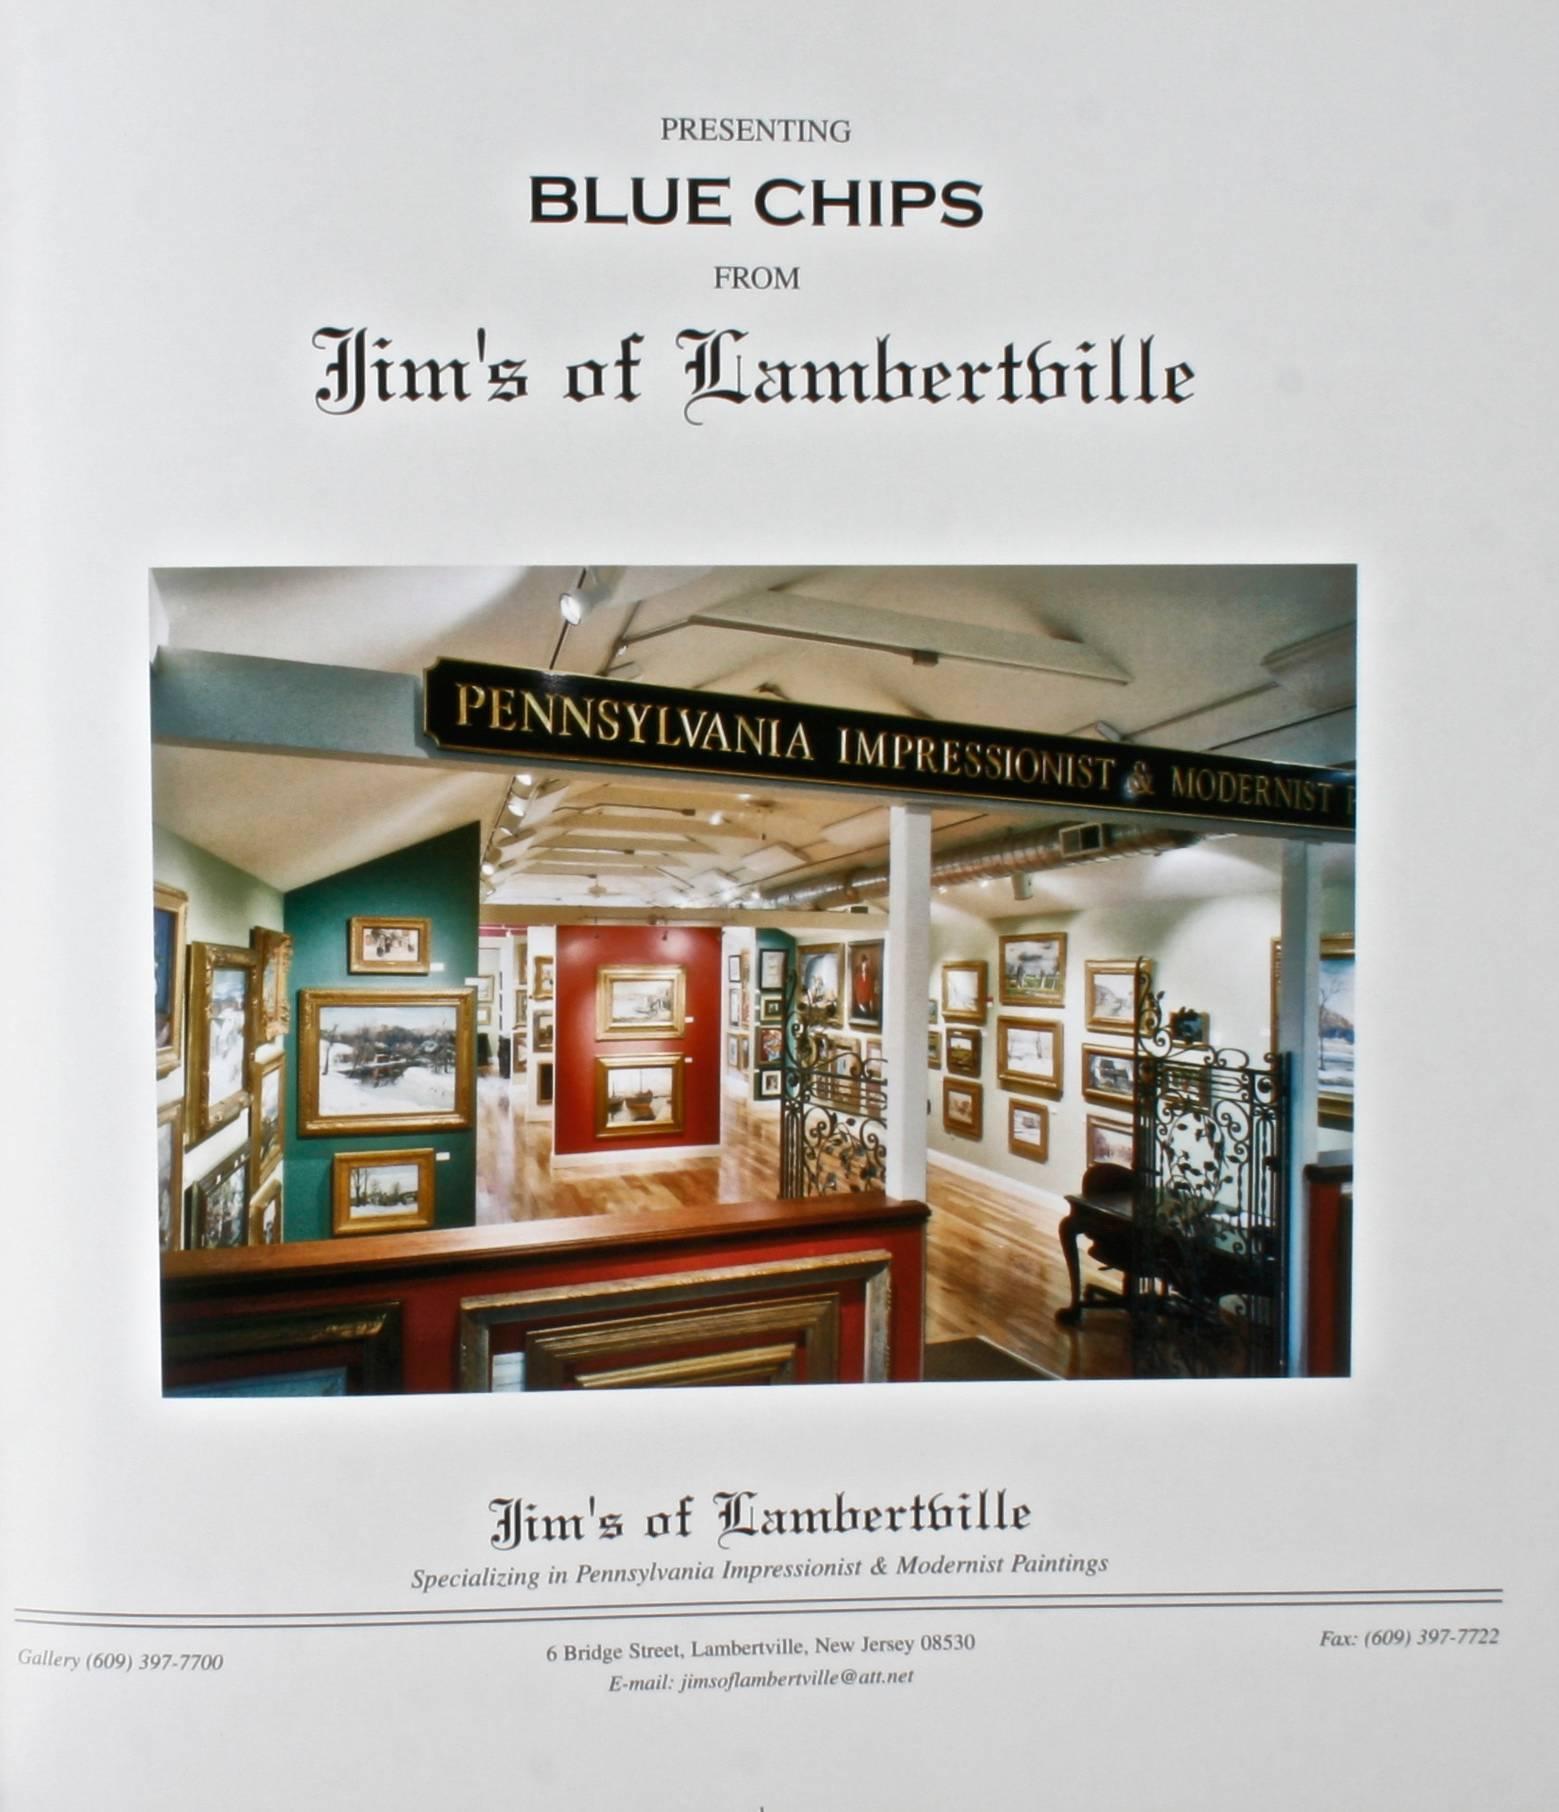 Blue Chips de chez Jim de Lambertville. 128 pages. Catalogue de la galerie Jim's of Lambertville, un marchand d'art spécialisé dans les peintures impressionnistes et modernistes de Pennsylvanie. Parmi les artistes figurent Daniel Garber, Lee Gatch,